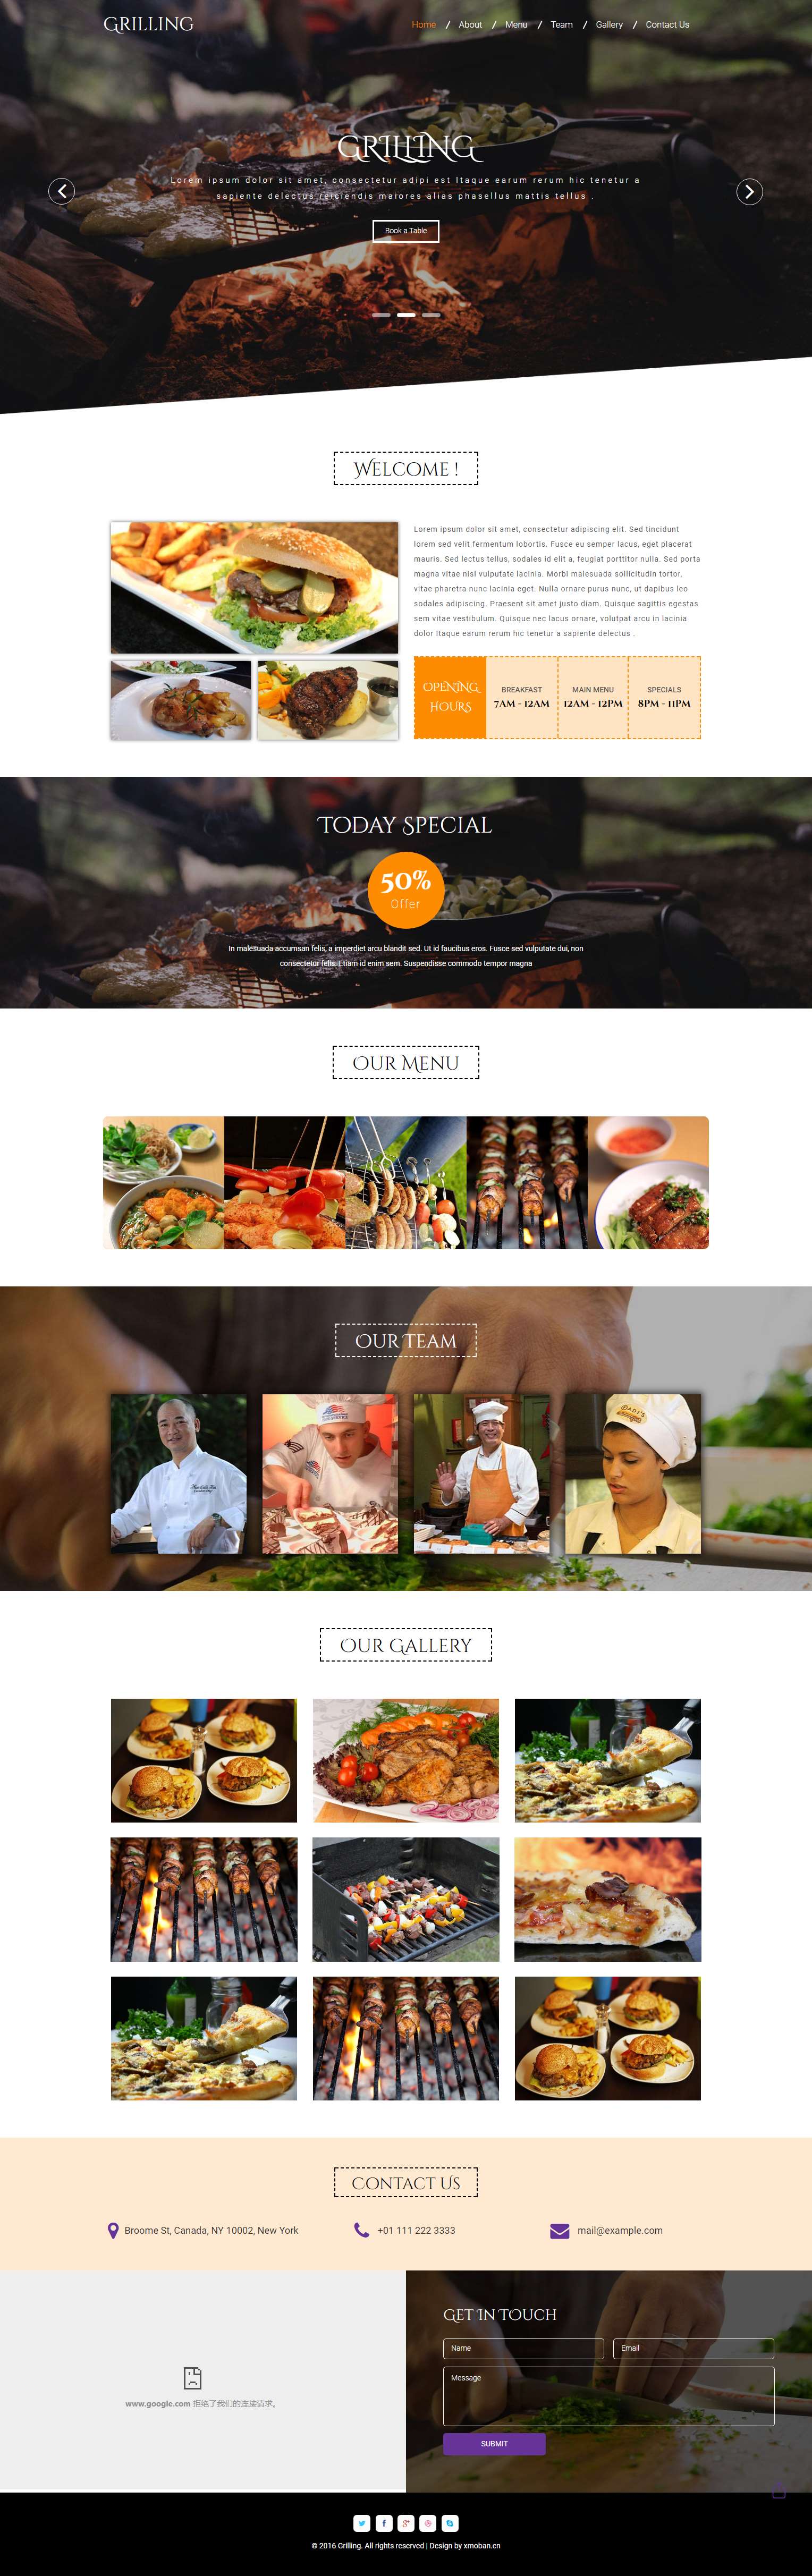 橙色欧美风格的烧烤餐厅企业网站源码下载